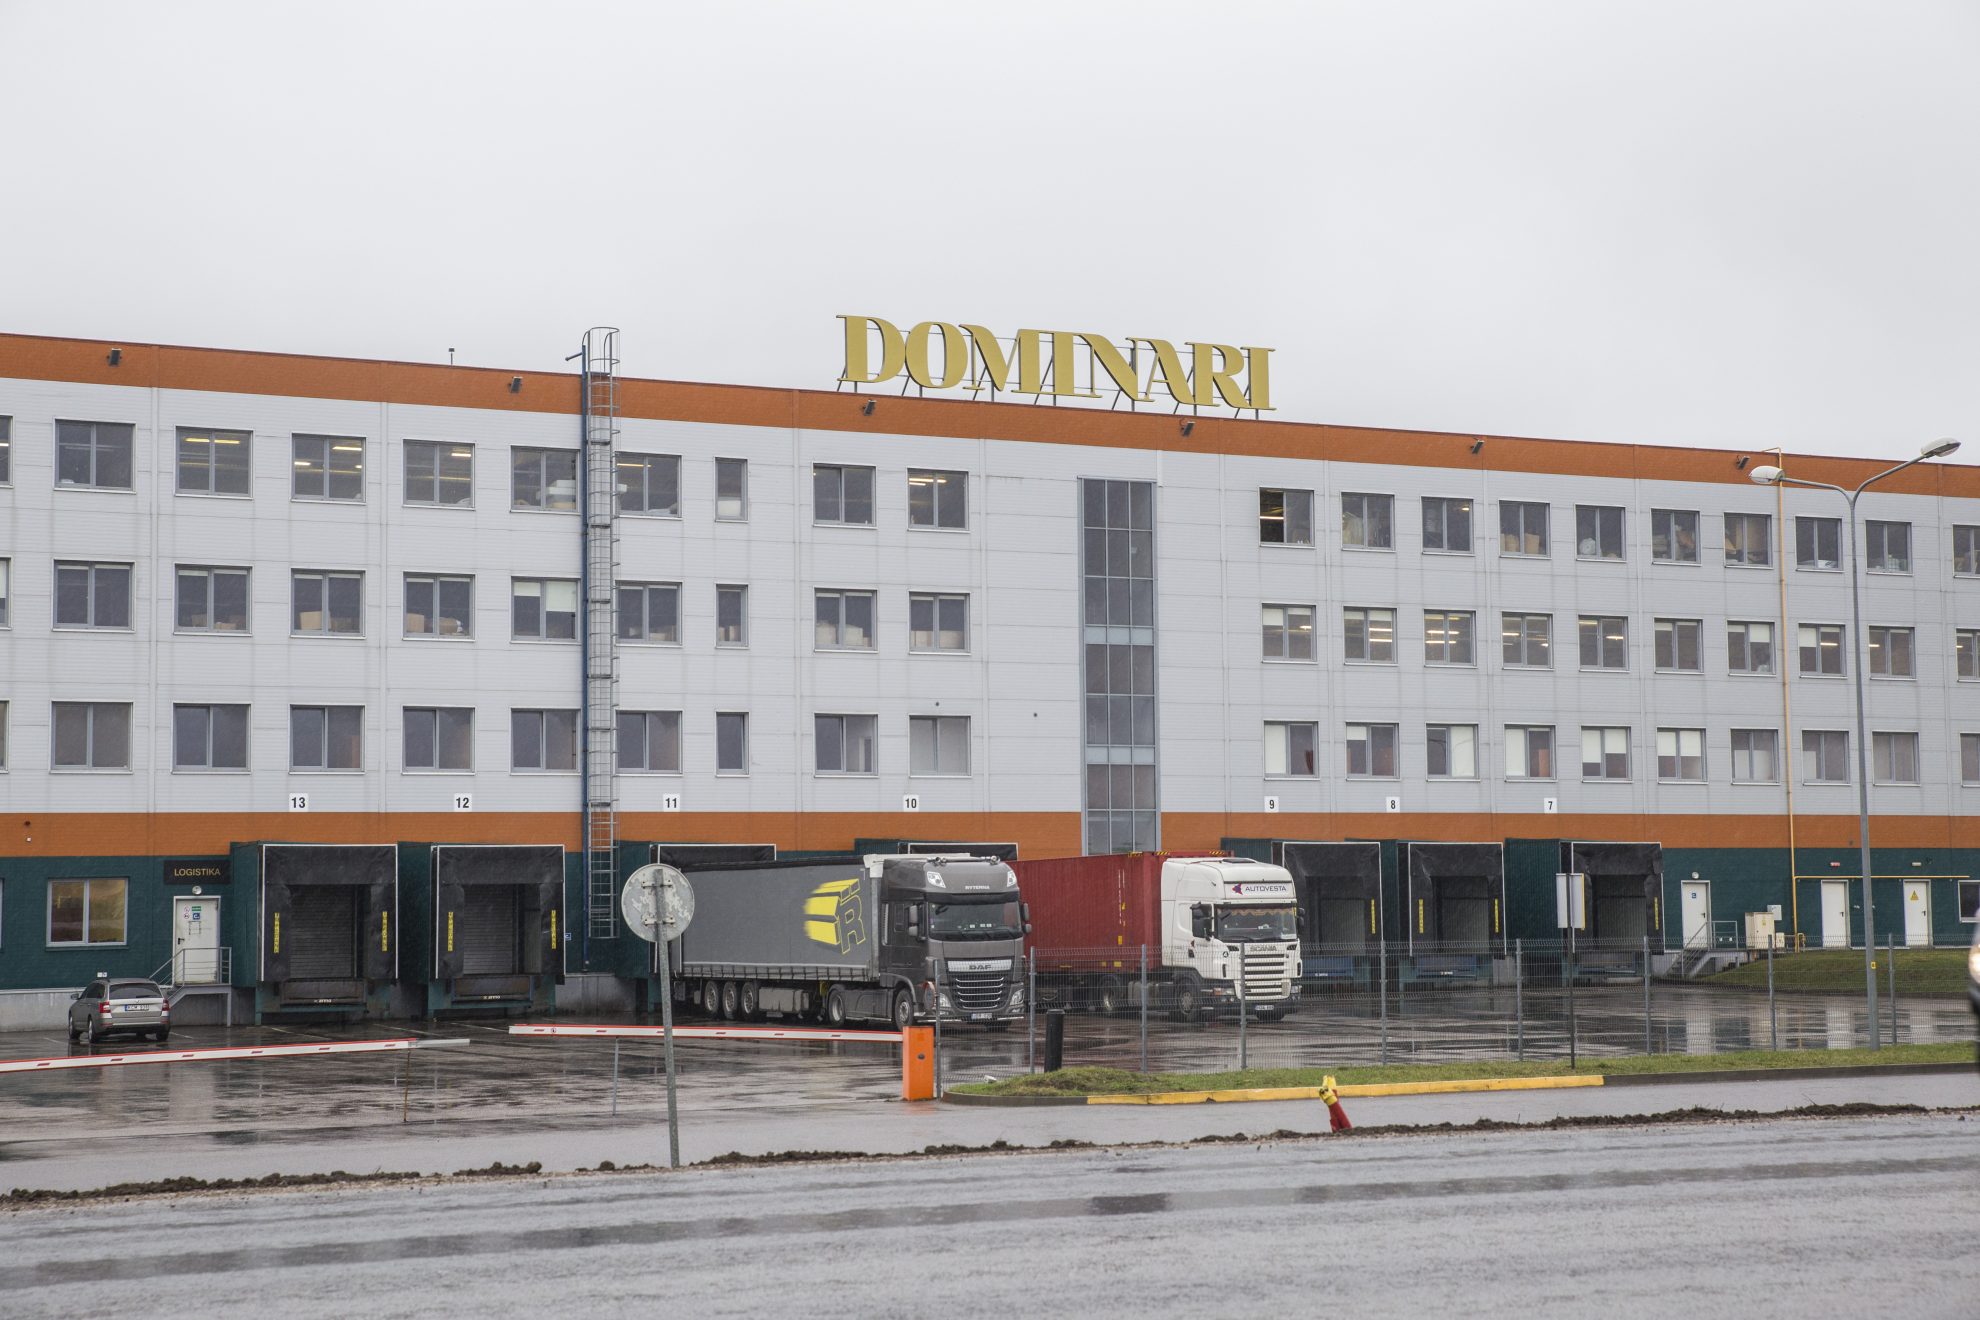 Panevėžio rajone veikiančioje baldų gamykloje „Dominari“ sužalota moteris, jai kolega elektriniu krautuvu sulaužė blauzdą. Ir tai – nebe pirma nelaimė per pastaruosius pusantrų metų šios įmonės grupėje.